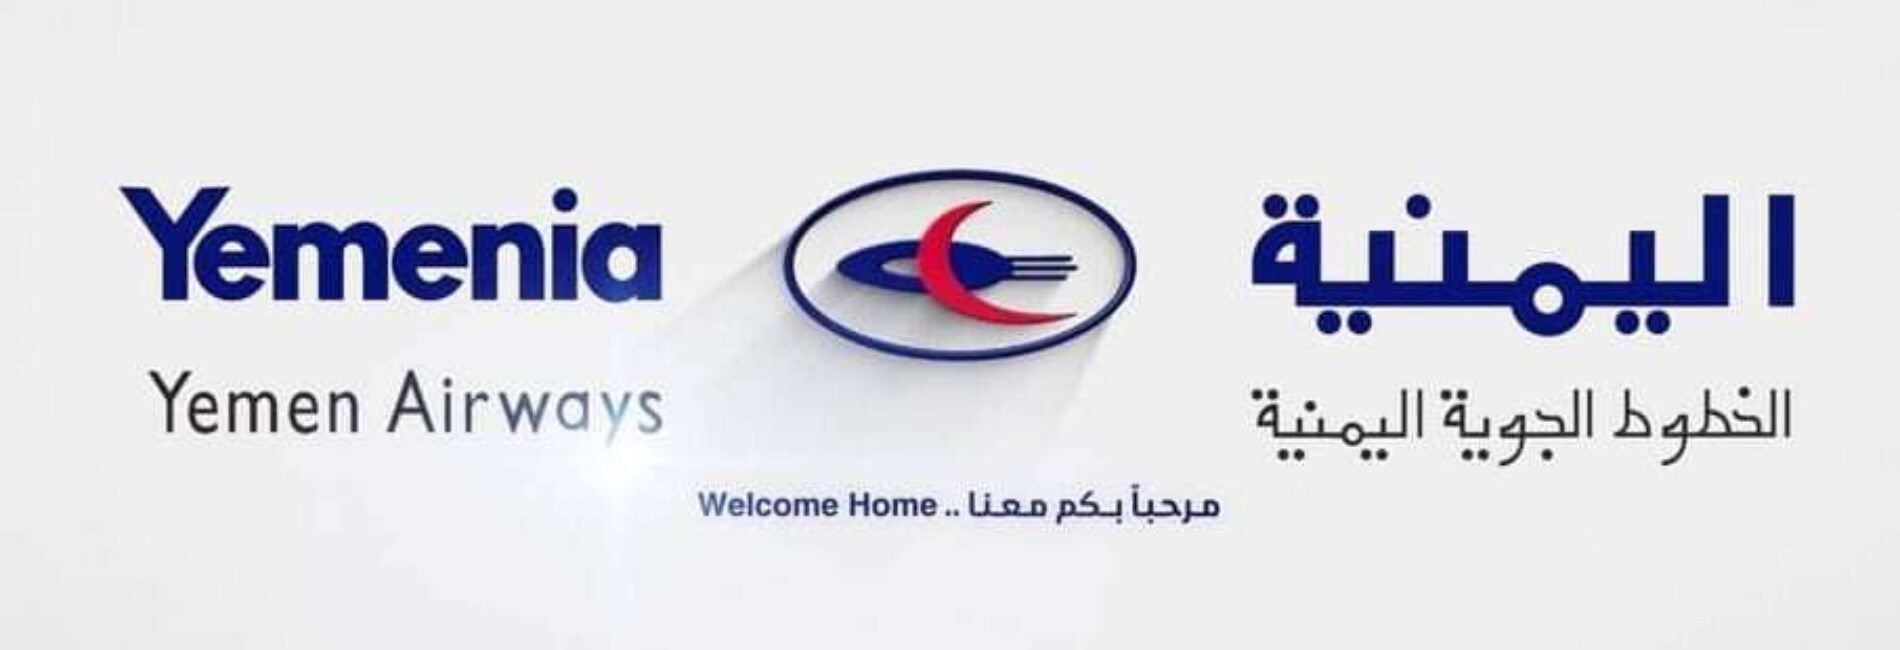 اليمنية تزف خبرا سارا لجميع المسافرين العائدين على الرحلة 601 عدن - القاهرة